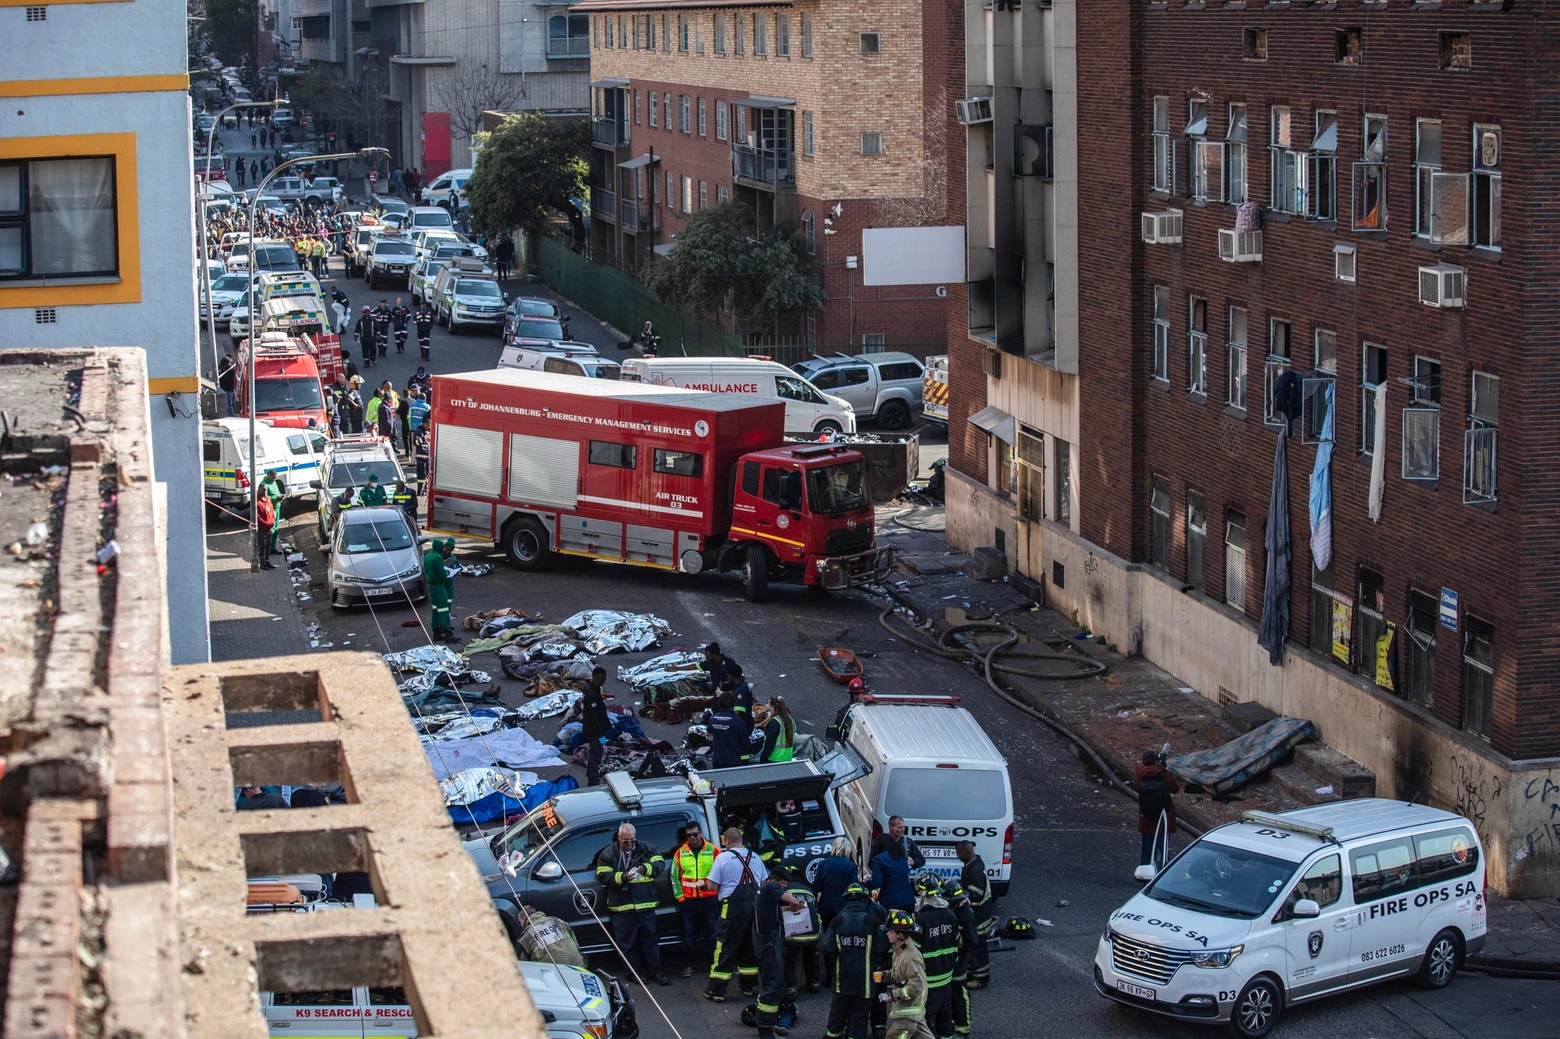 Johannesburg, incendio in una palazzina: oltre 60 morti